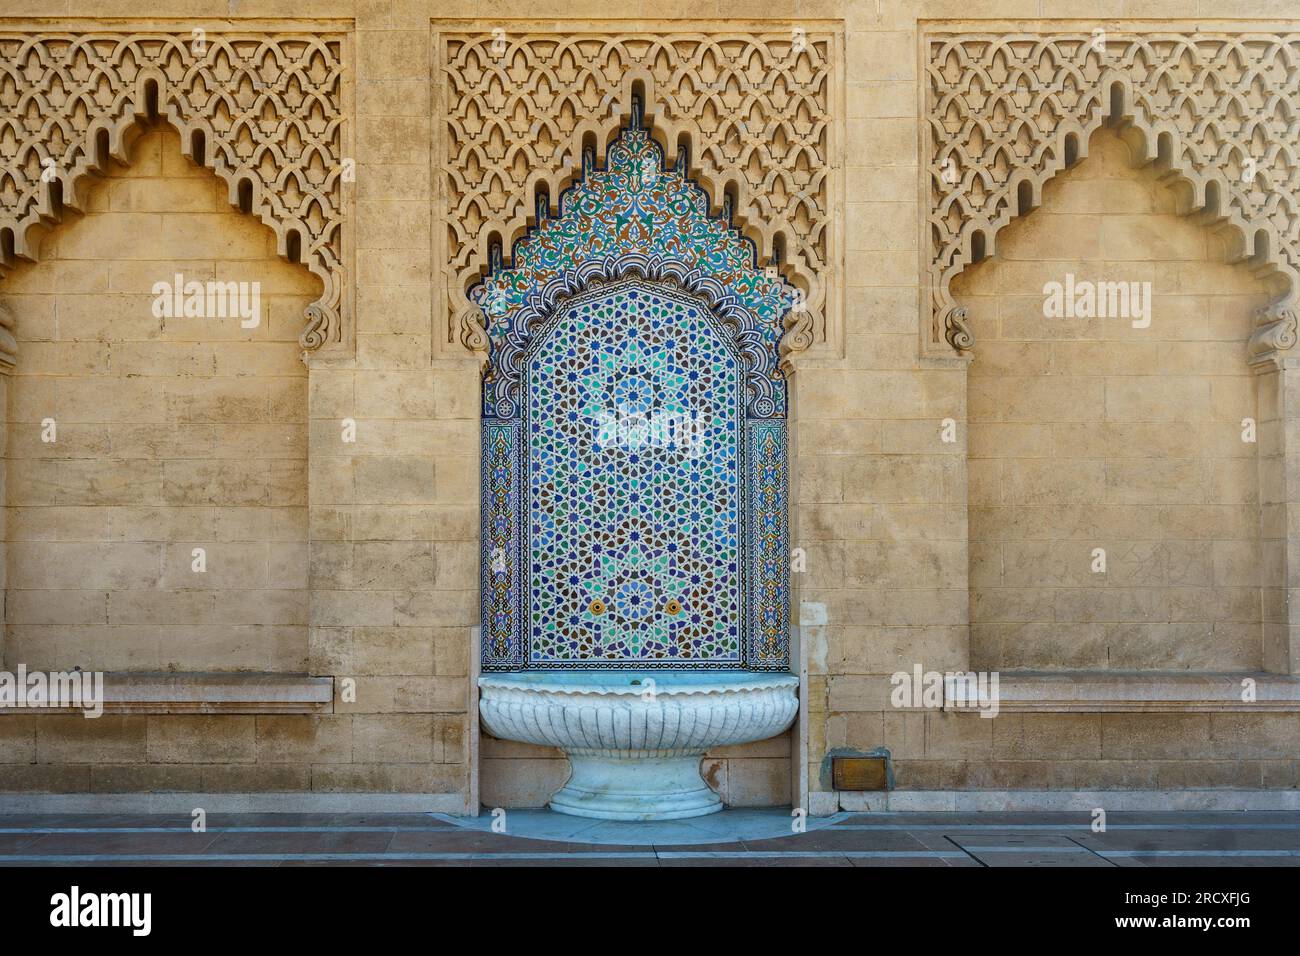 Maroc. Rabat. Une partie de la façade avec une fontaine carrelée d'eau du Mausolée de Mohammed V sur l'esplanade de Yacoub al-Mansour Banque D'Images